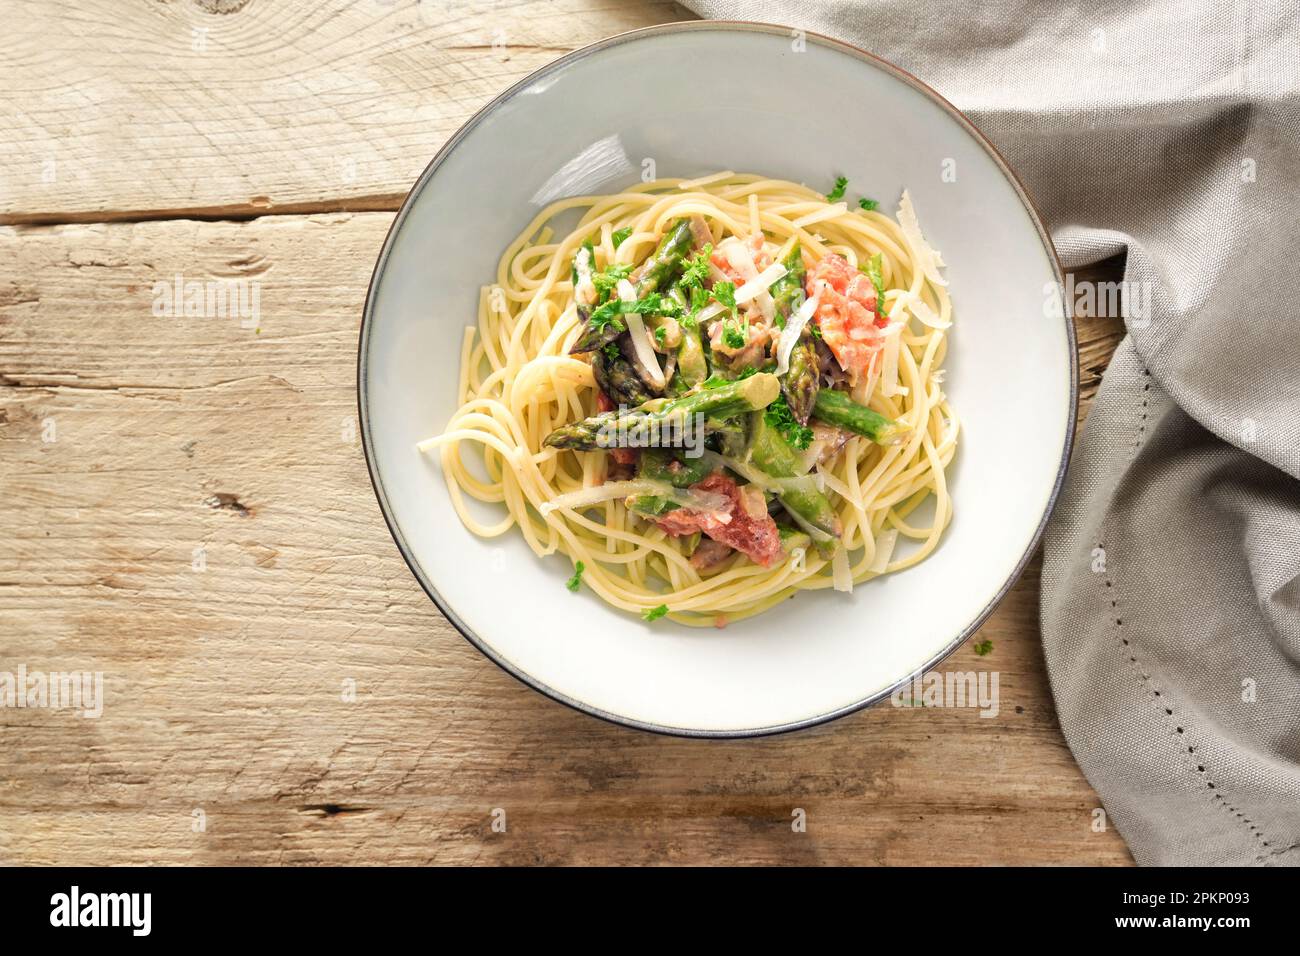 sauce végétale aux asperges vertes et tomates au parmesan et au persil, garnir de spaghetti dans une assiette sur une table en bois rustique, haut angle vie Banque D'Images